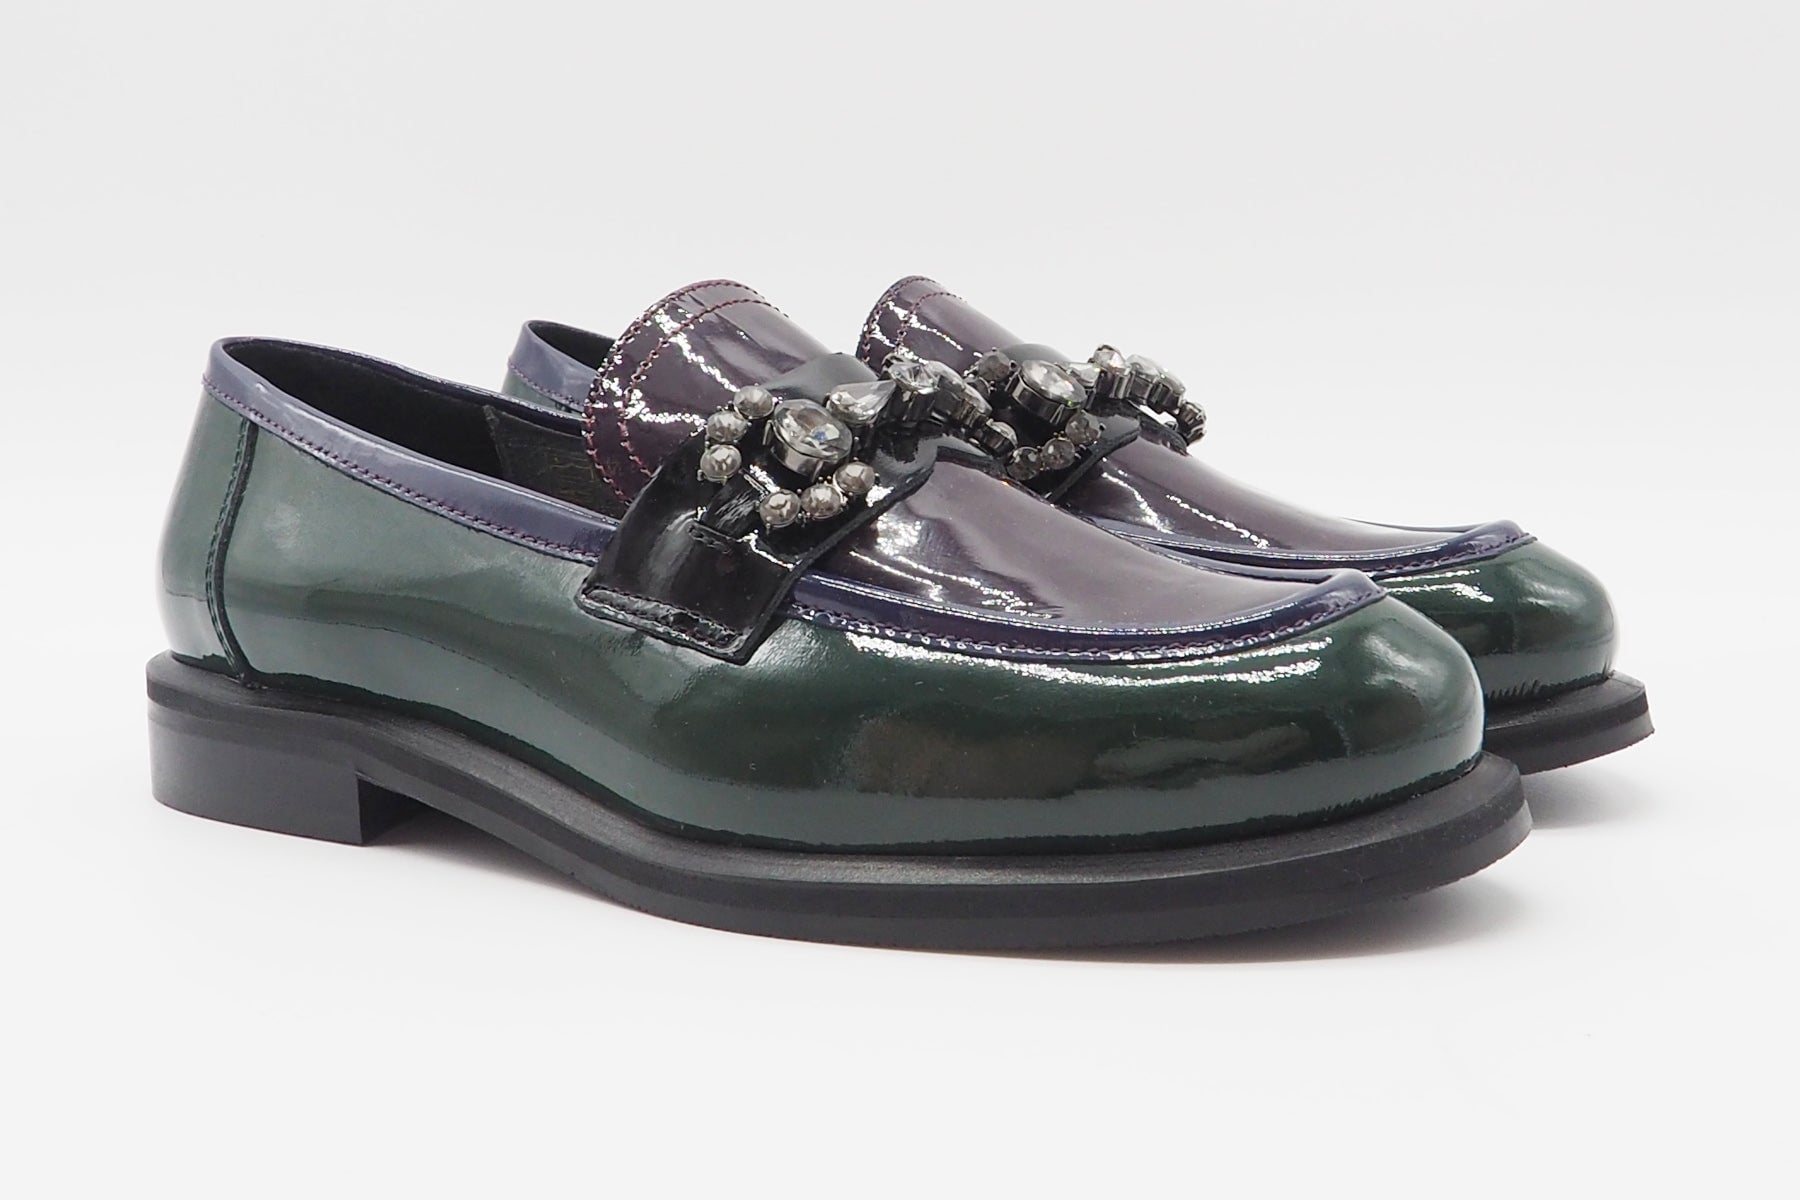 Damen Loafer aus Lackleder in Multicolor - Absatz 3cm Damen Loafers & Schnürer Maripé 